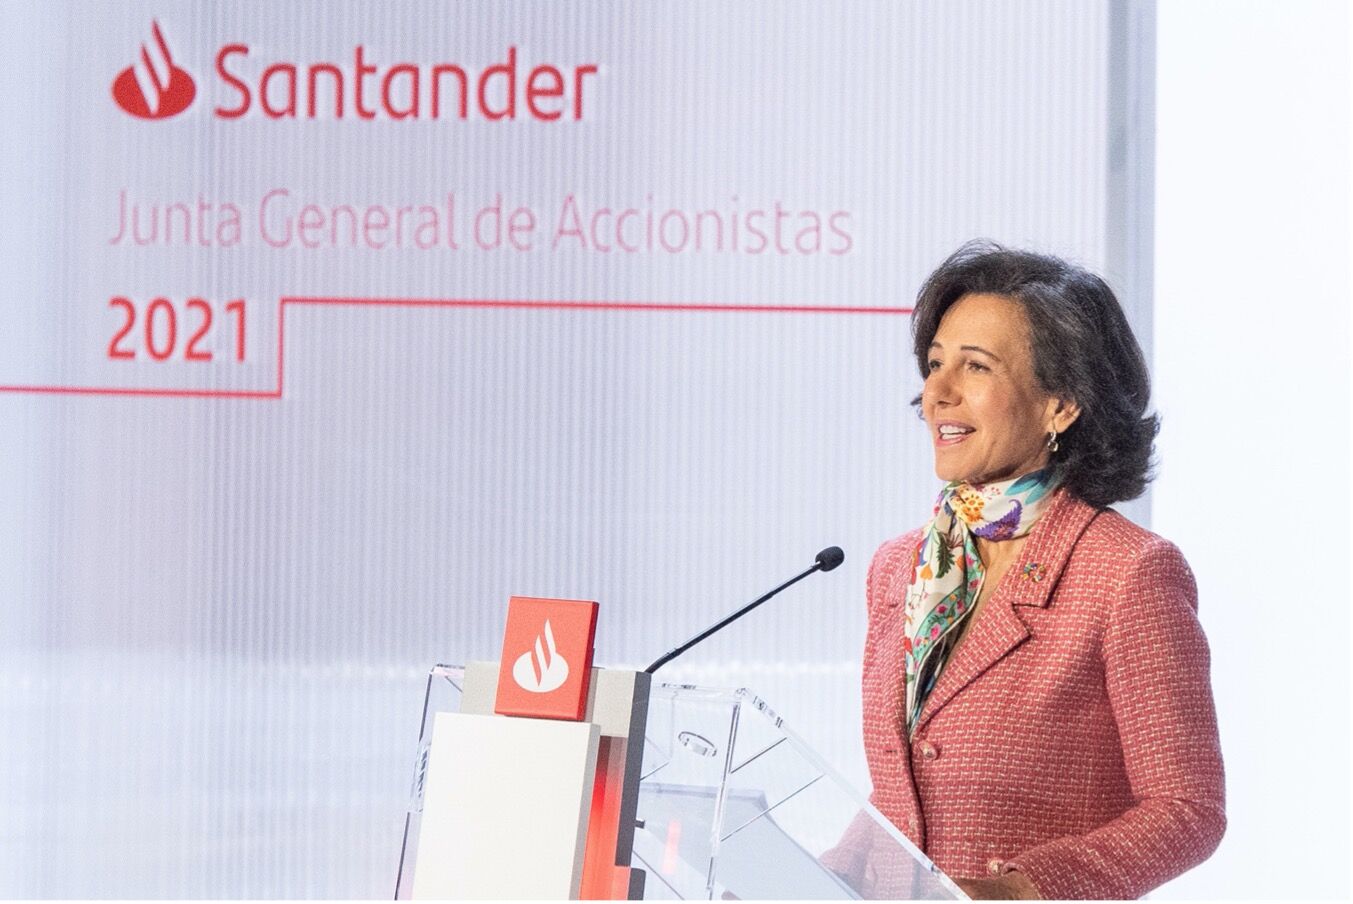 Banco Santander, Merlin Properties y Fluidra: oportunidades de inversión